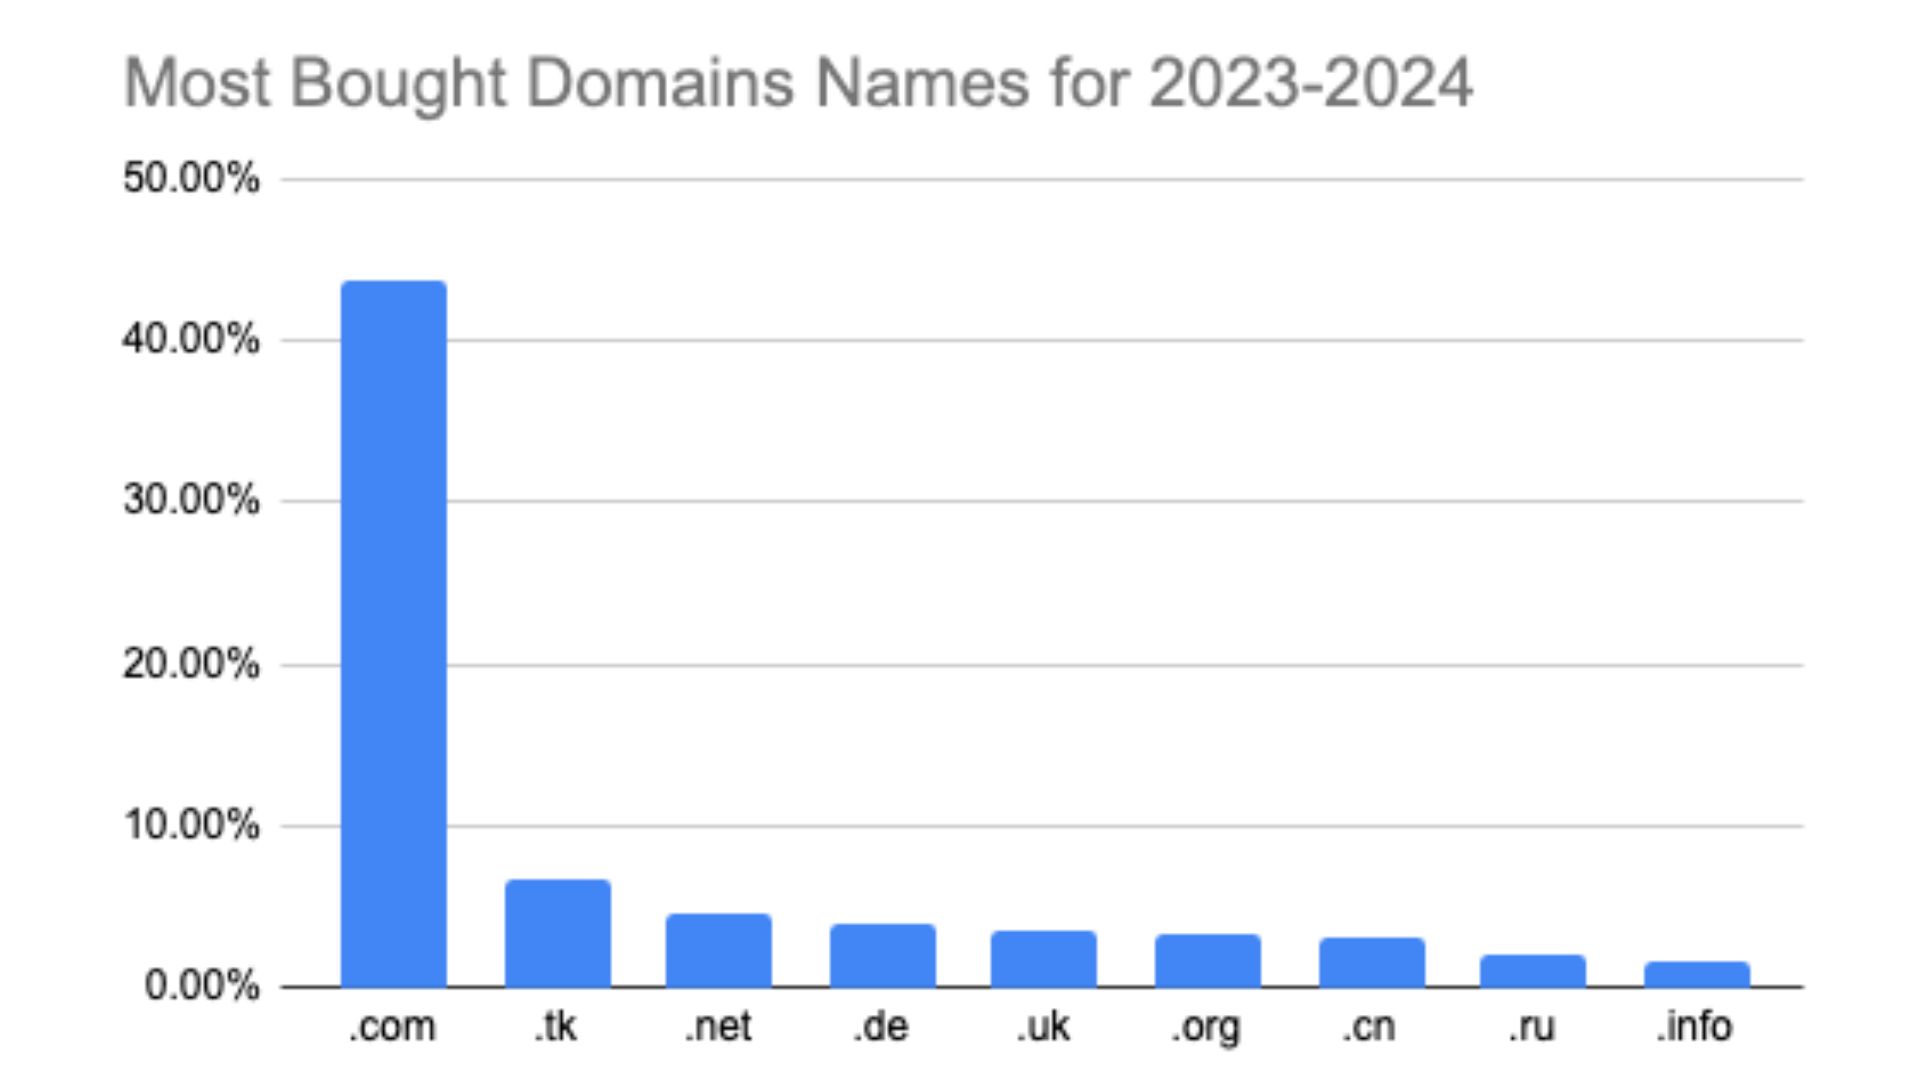 Die am häufigsten gekauften Domains nach Domainendung